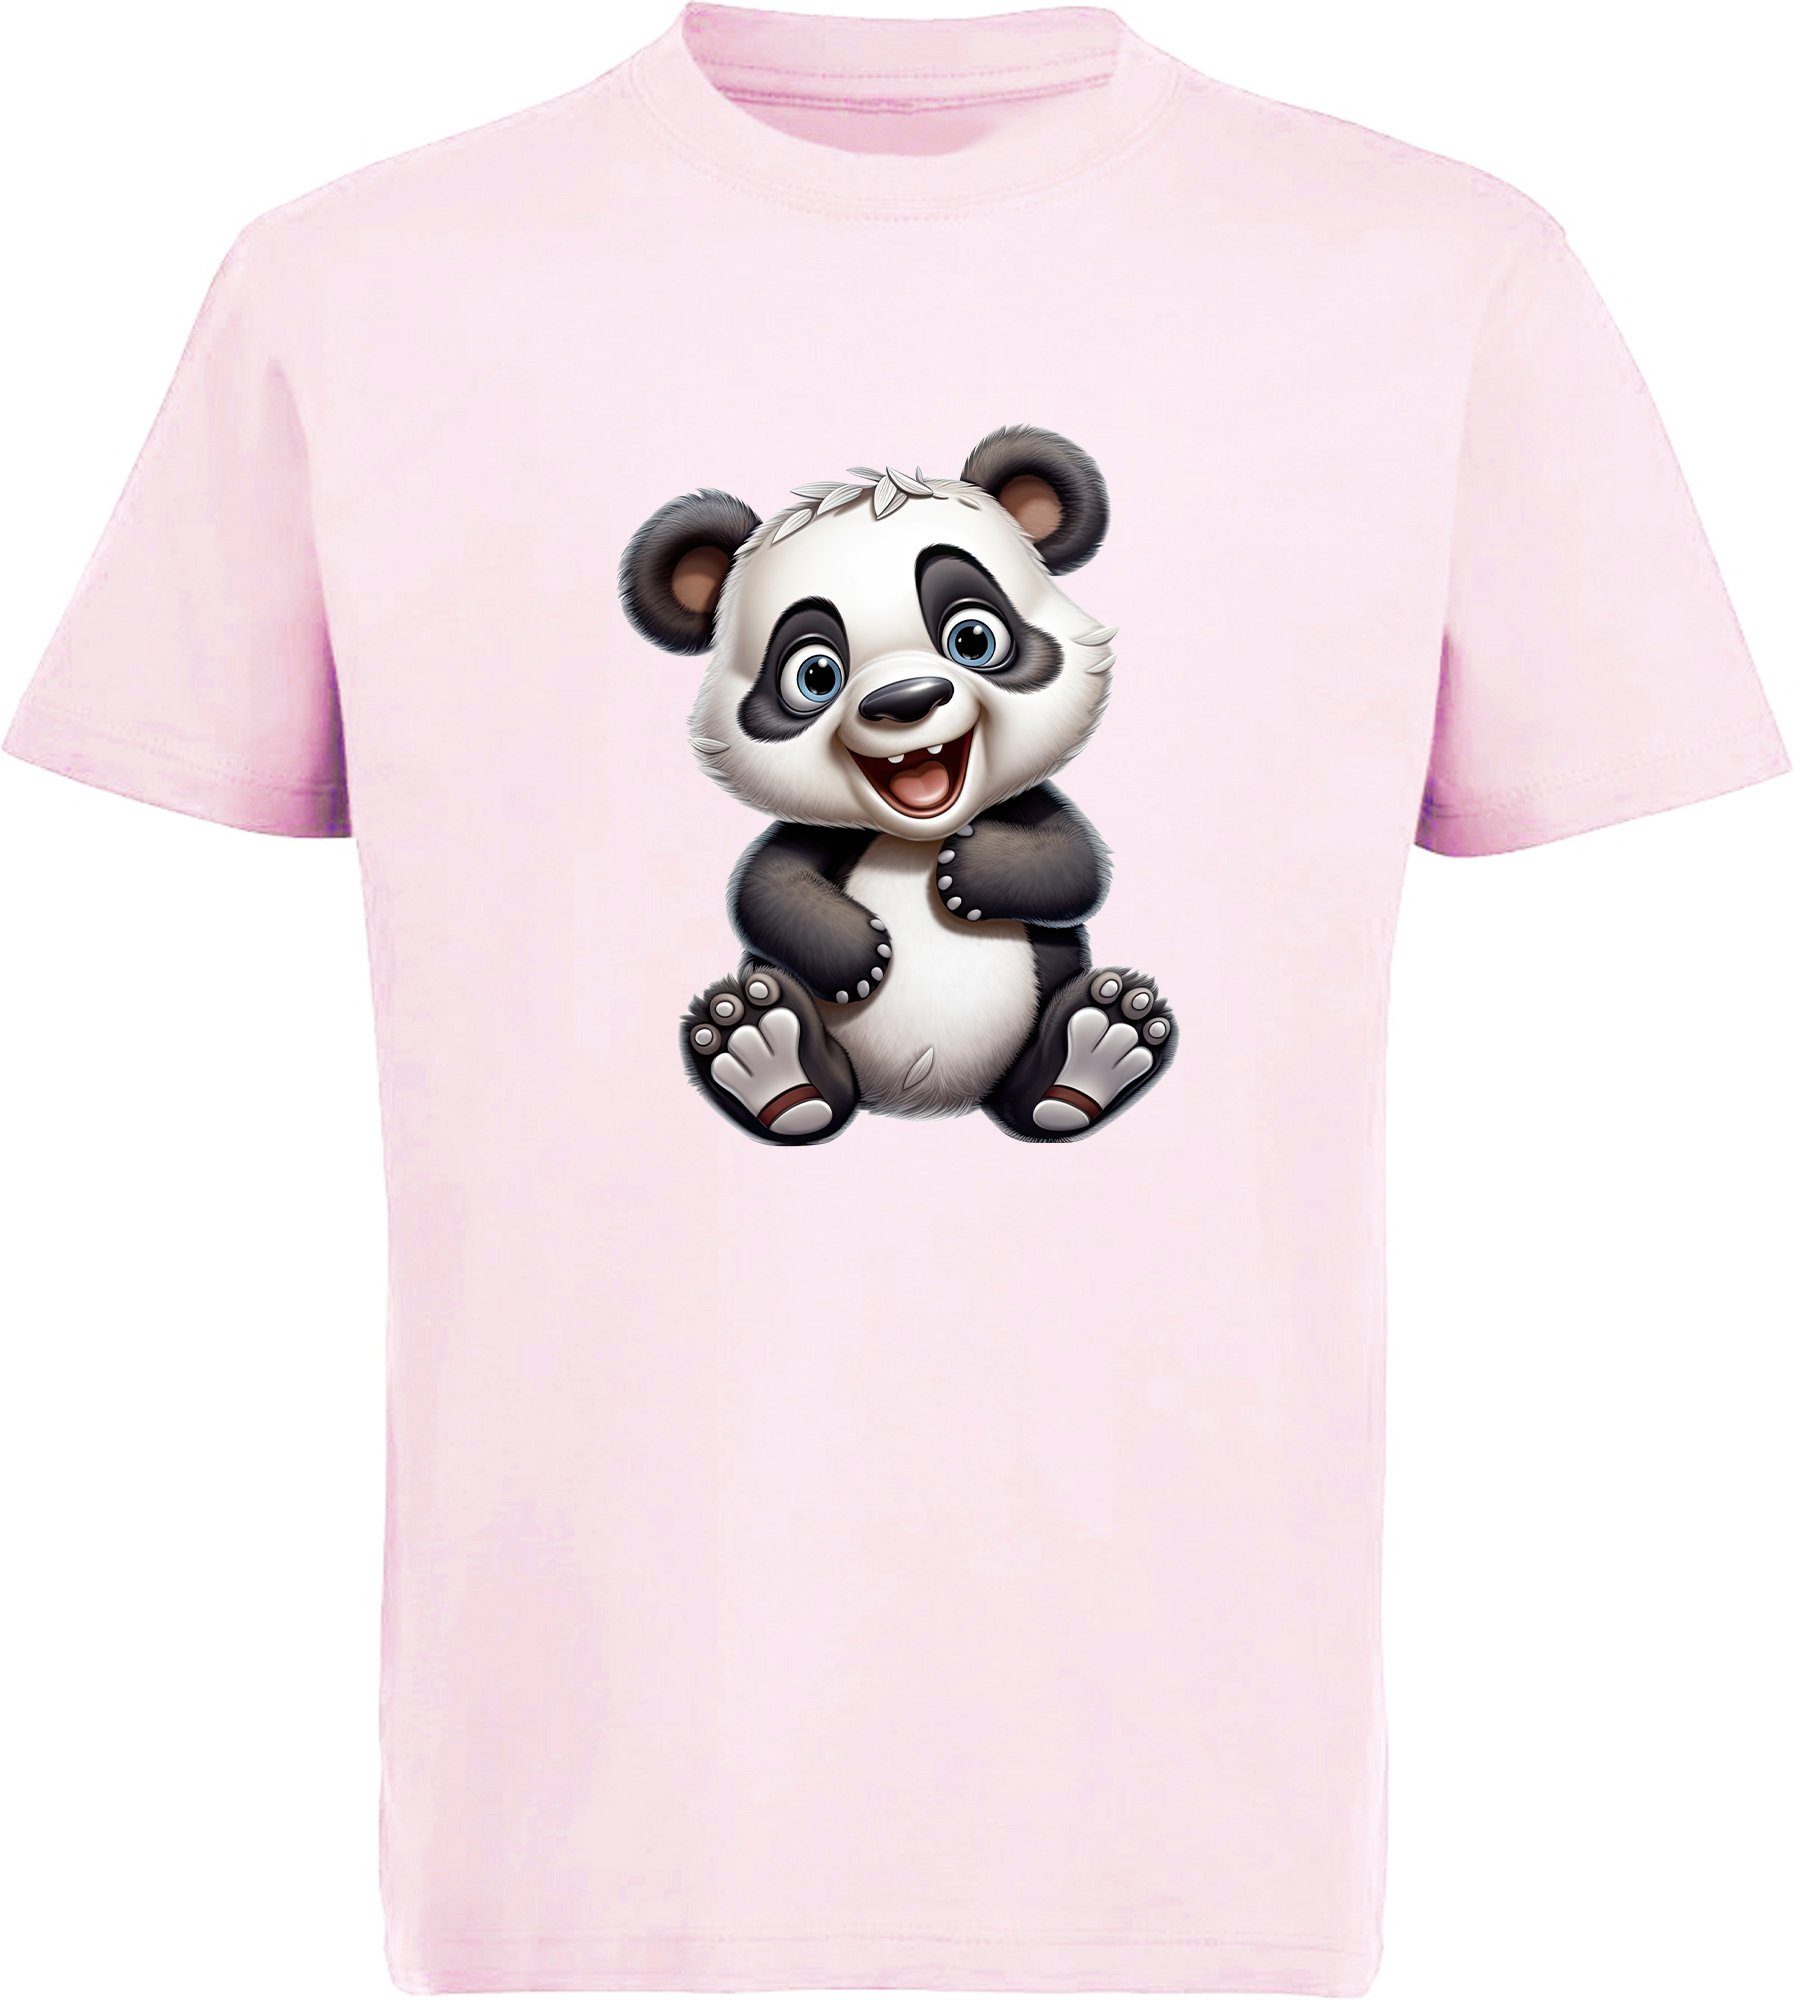 MyDesign24 T-Shirt Kinder Wildtier Print Shirt bedruckt - Baby Panda Bär Baumwollshirt mit Aufdruck, i277 rosa